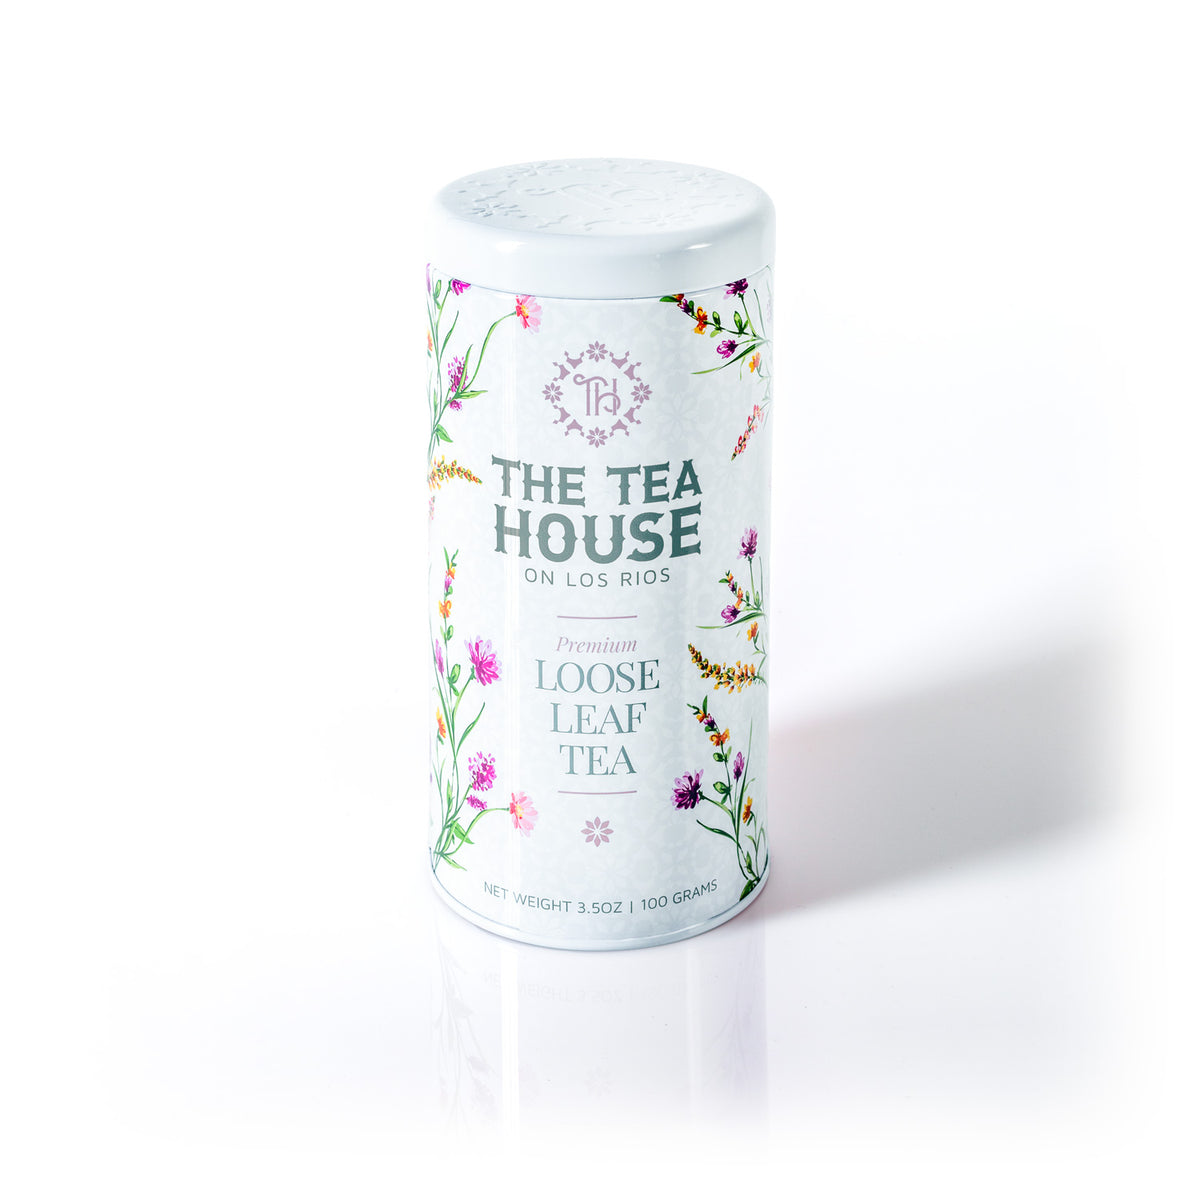 The Tea House on Los Rios presents a NEW 100g Loose Leaf Tea Tin